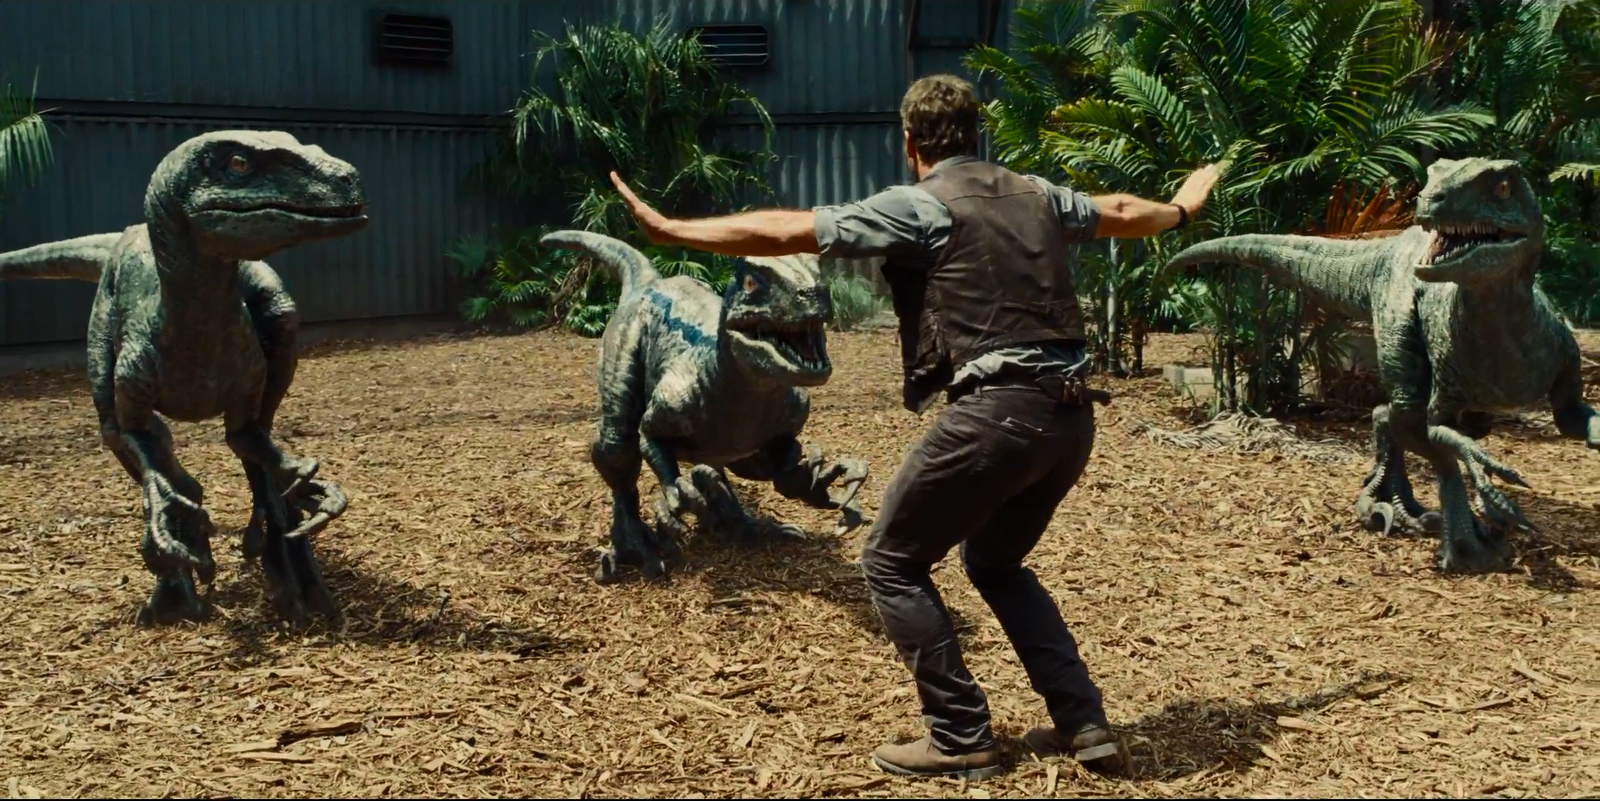 Novi trailer za "Jurassic World" otkriva pobješnjele dinosaure